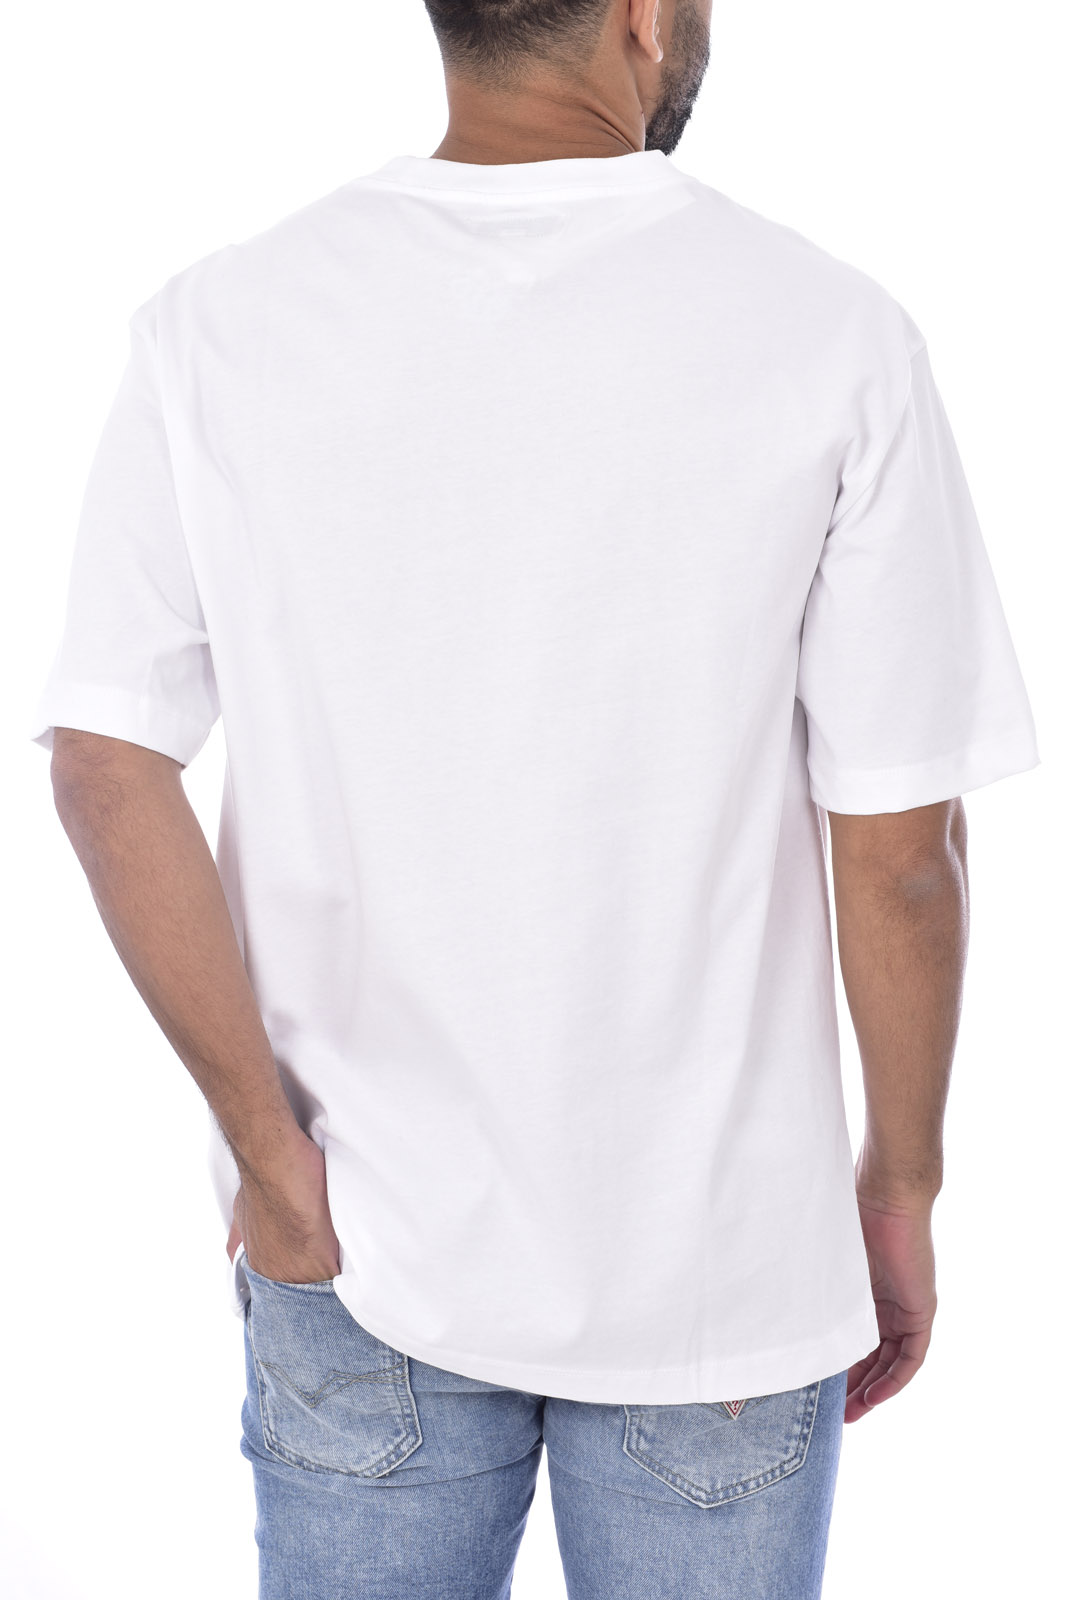 Tee-shirt blanc regular homme  Guess - M0gi95